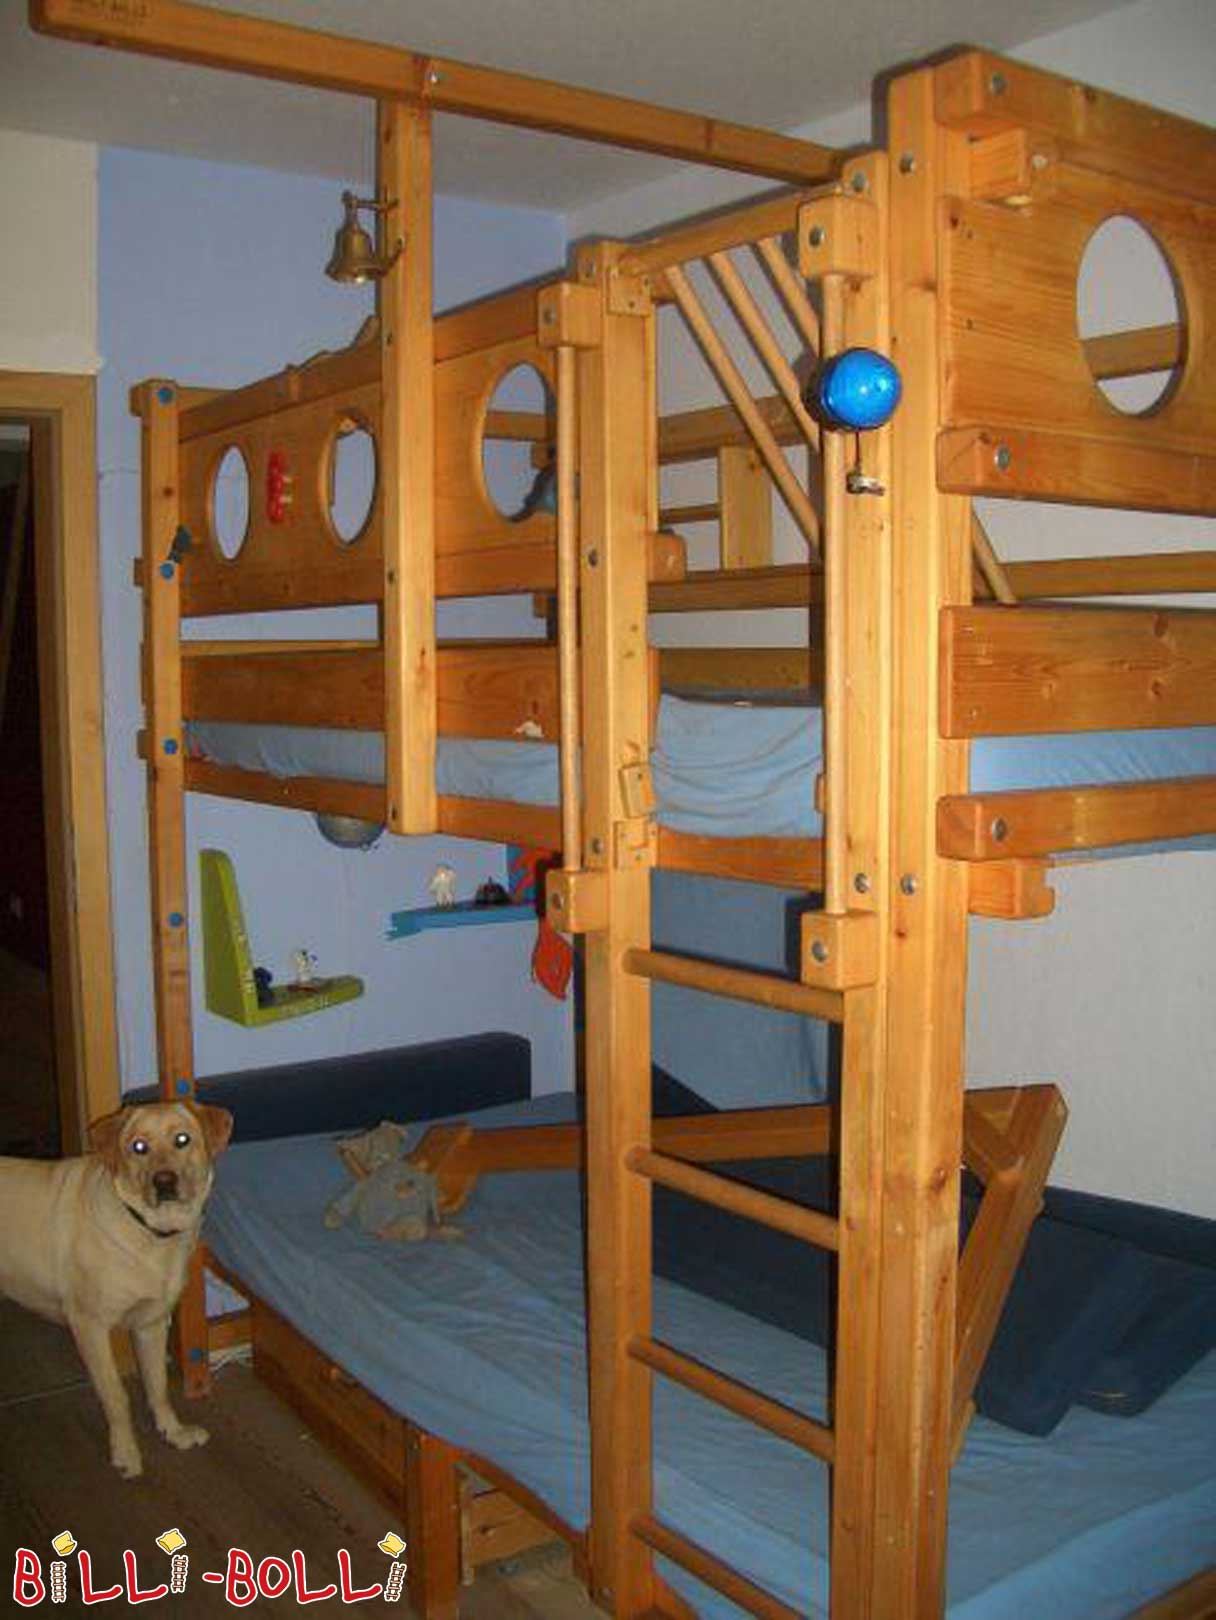 Originalna gusarska postelja Billi-Bolli (Kategorija: Uporabljeni pograd)